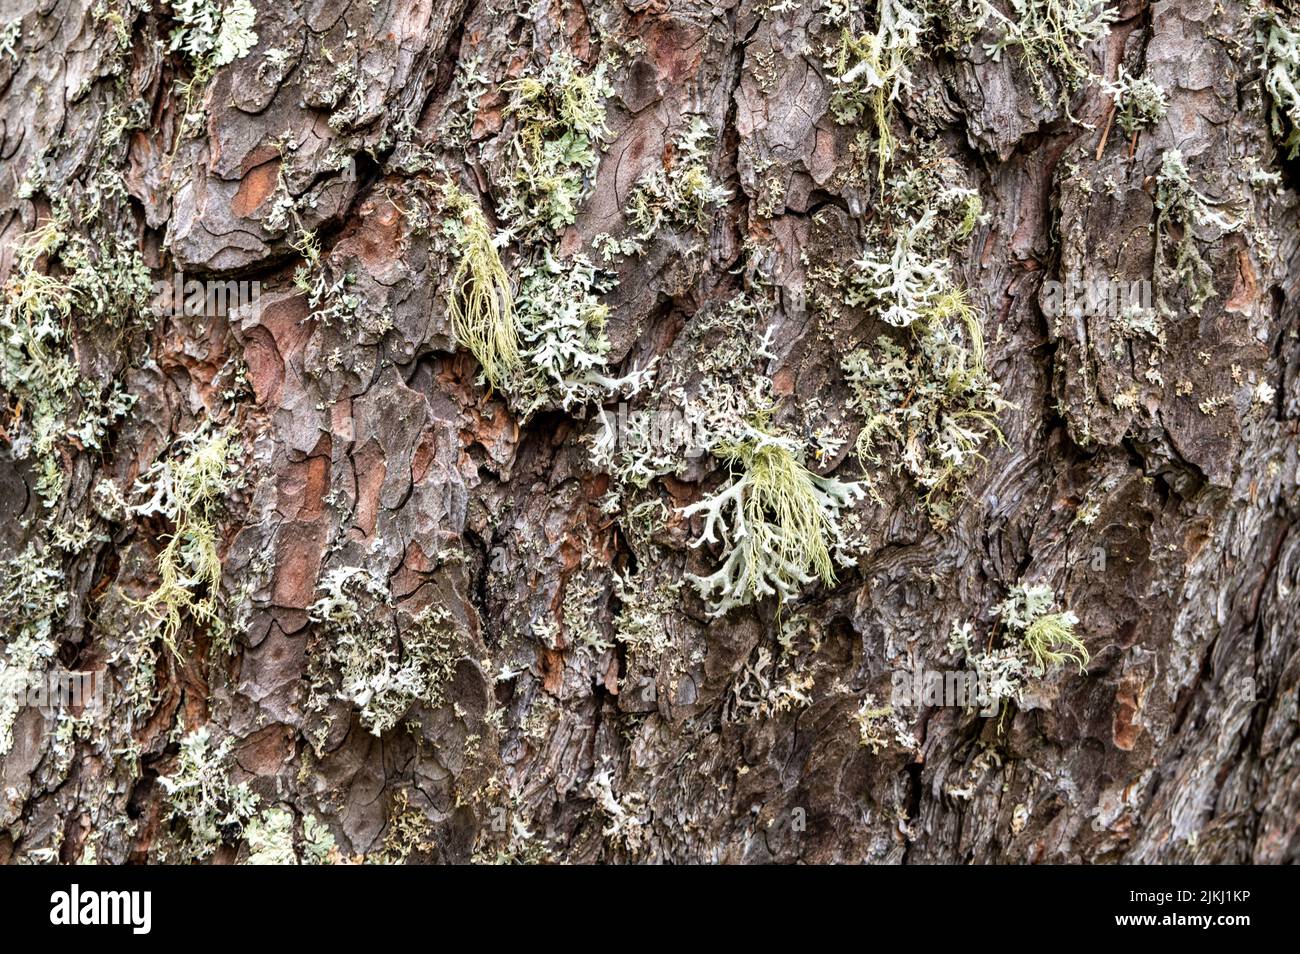 Un albero ricoperto di licheni foliosi e licheni frutticosi shrubby. Parmotrema perlatum sulla metà superiore del tronco Foto Stock